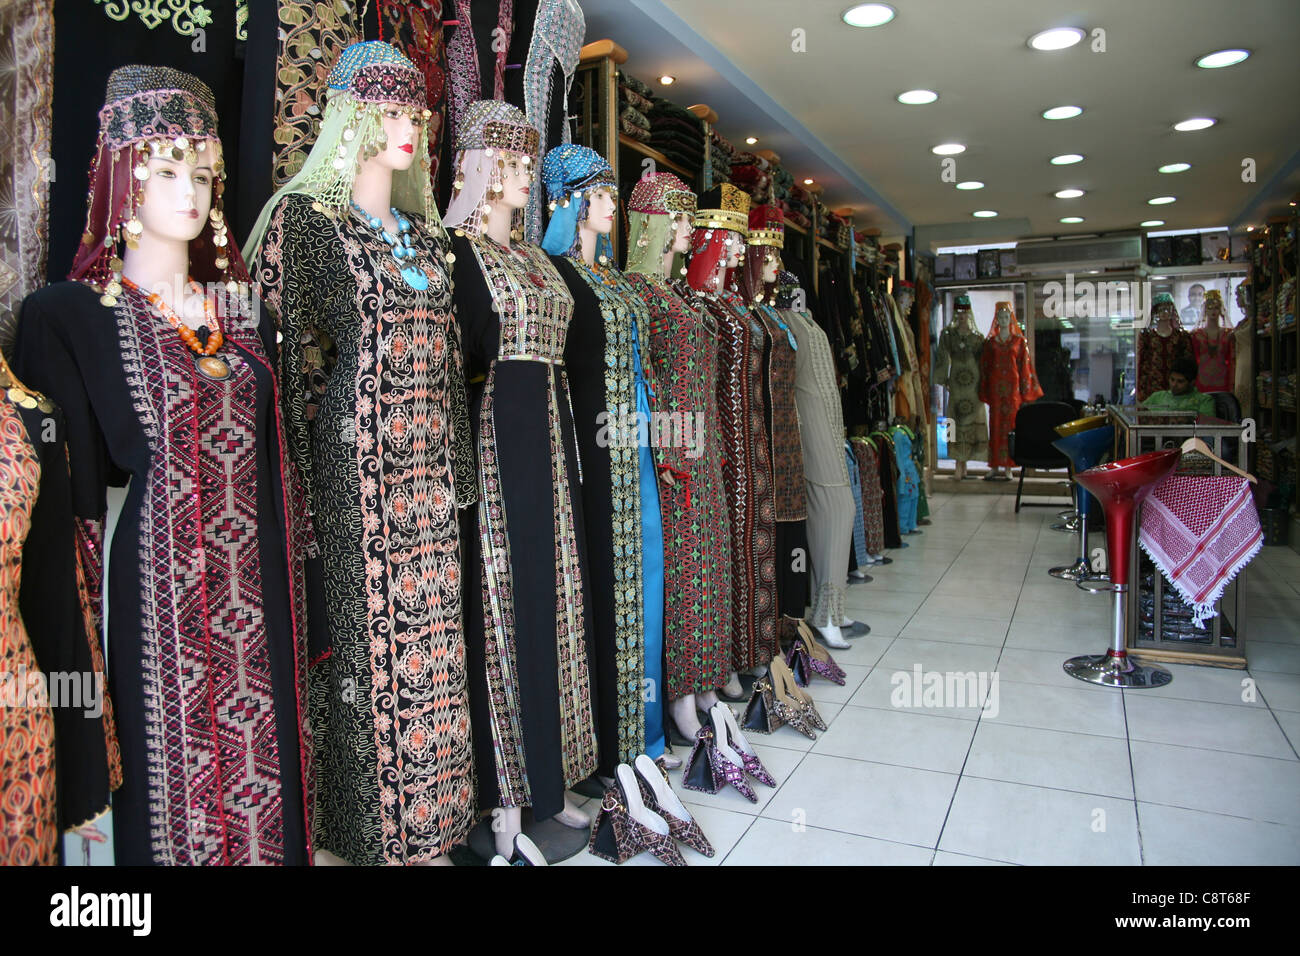 traditionelle Kleider in Amman, Jordanien Stockfotografie - Alamy